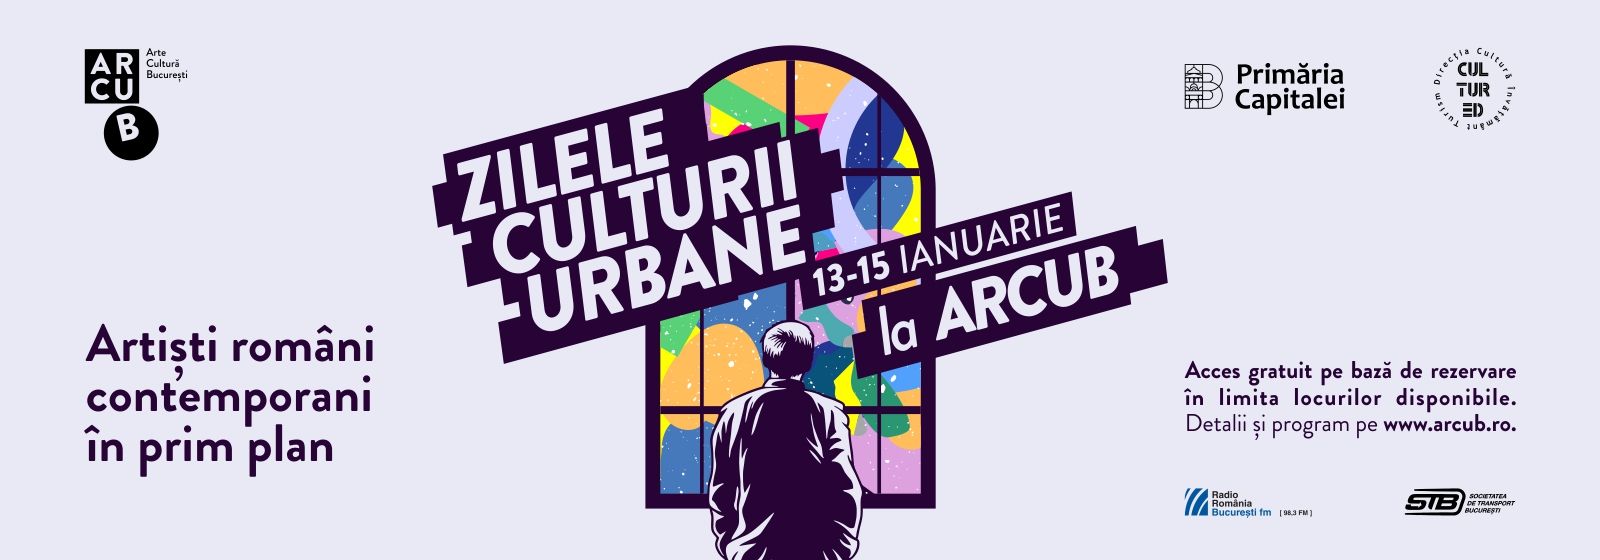 Evenimente de Zilele Culturii Urbane, la ARCUB